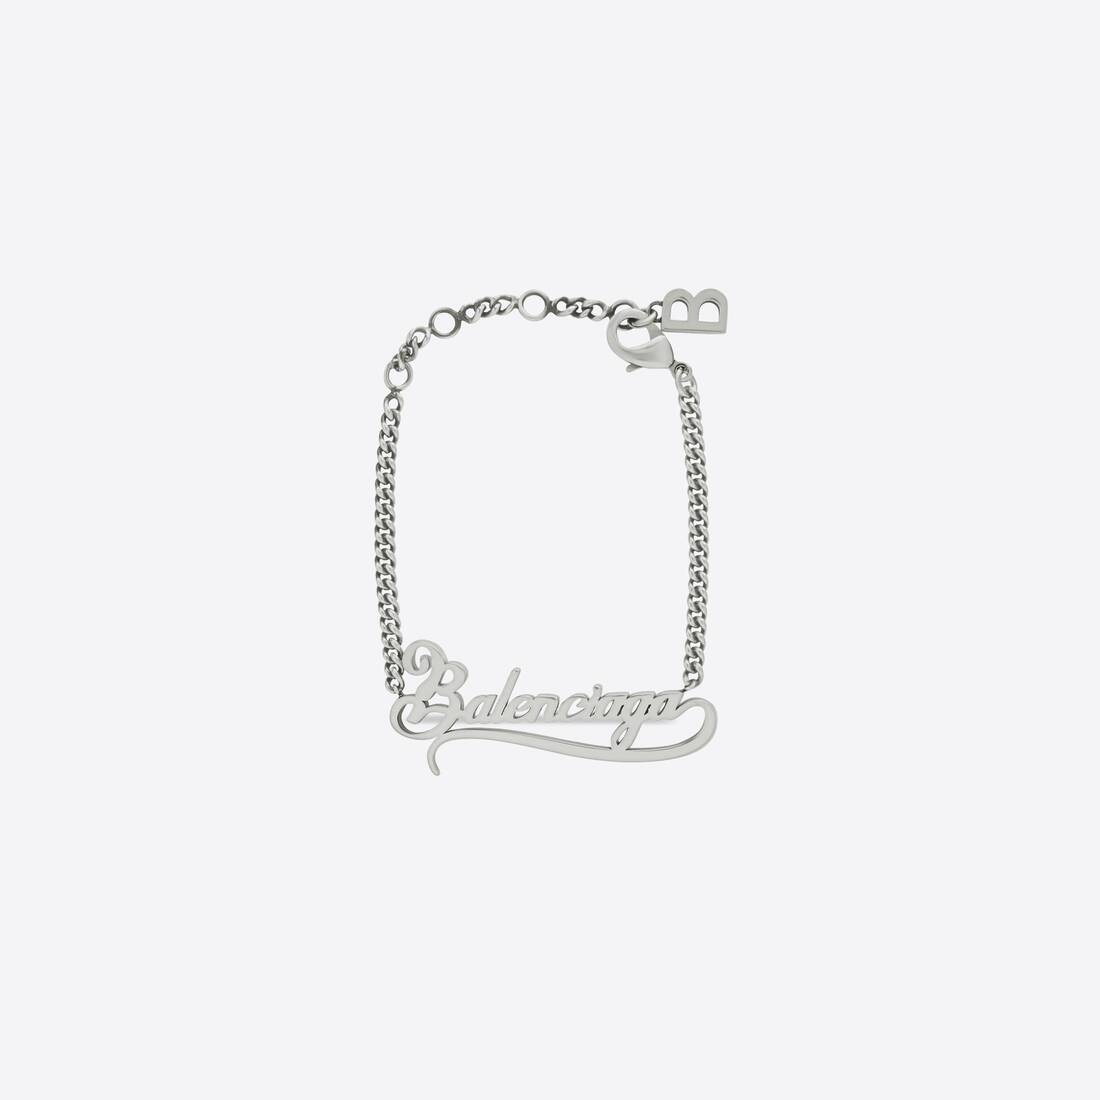 Typo Valentine Bracelet in Silver - 2